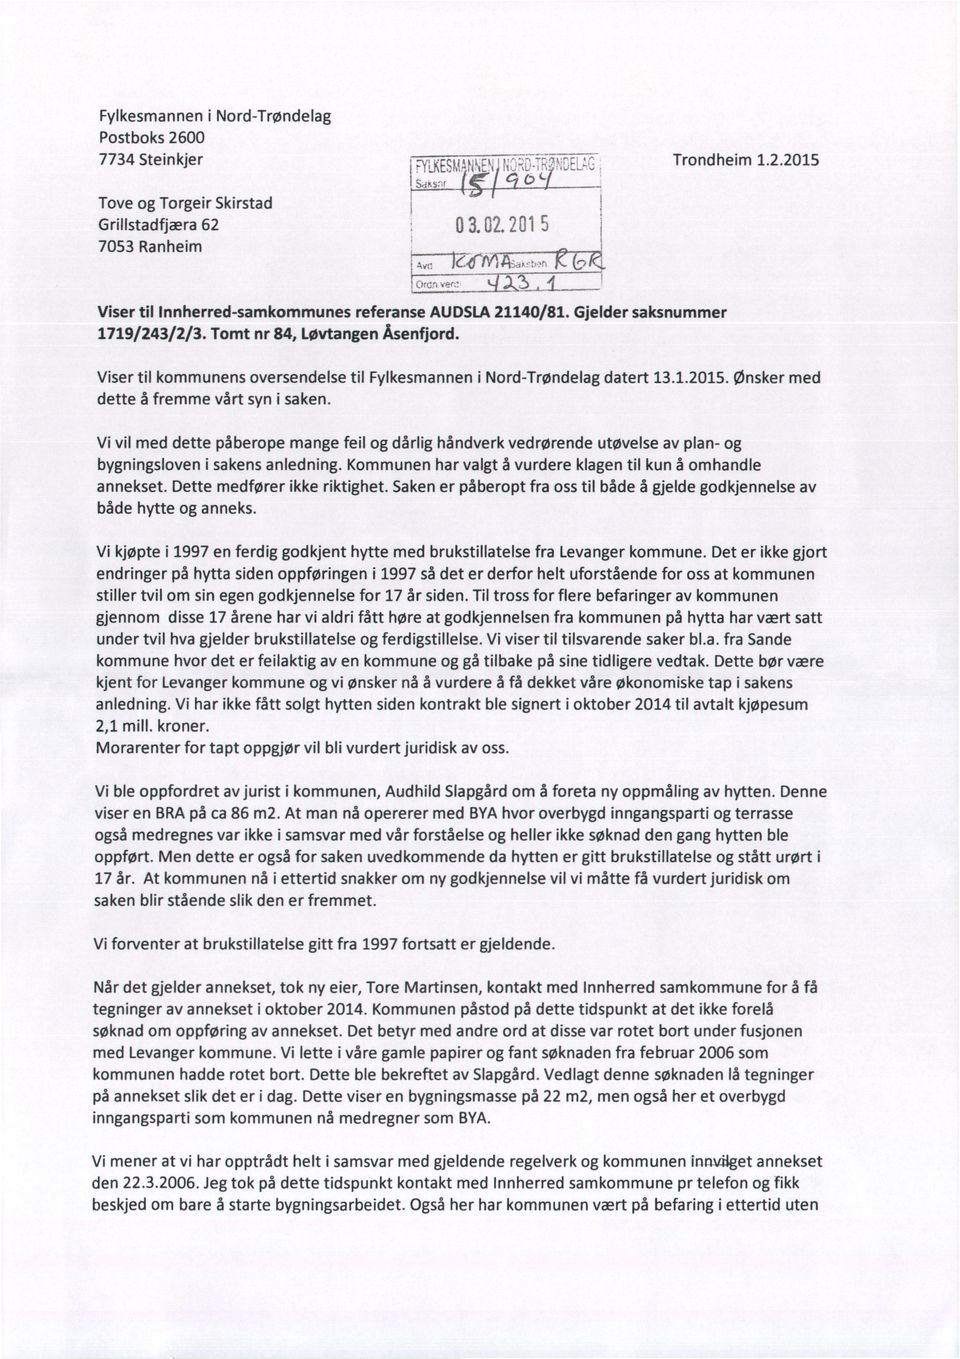 Viser til kommunens oversendelse til Fylkesmannen i Nord-Trøndelag datert 13.1.2015. Ønsker med dette å fremme vårt syn i saken.